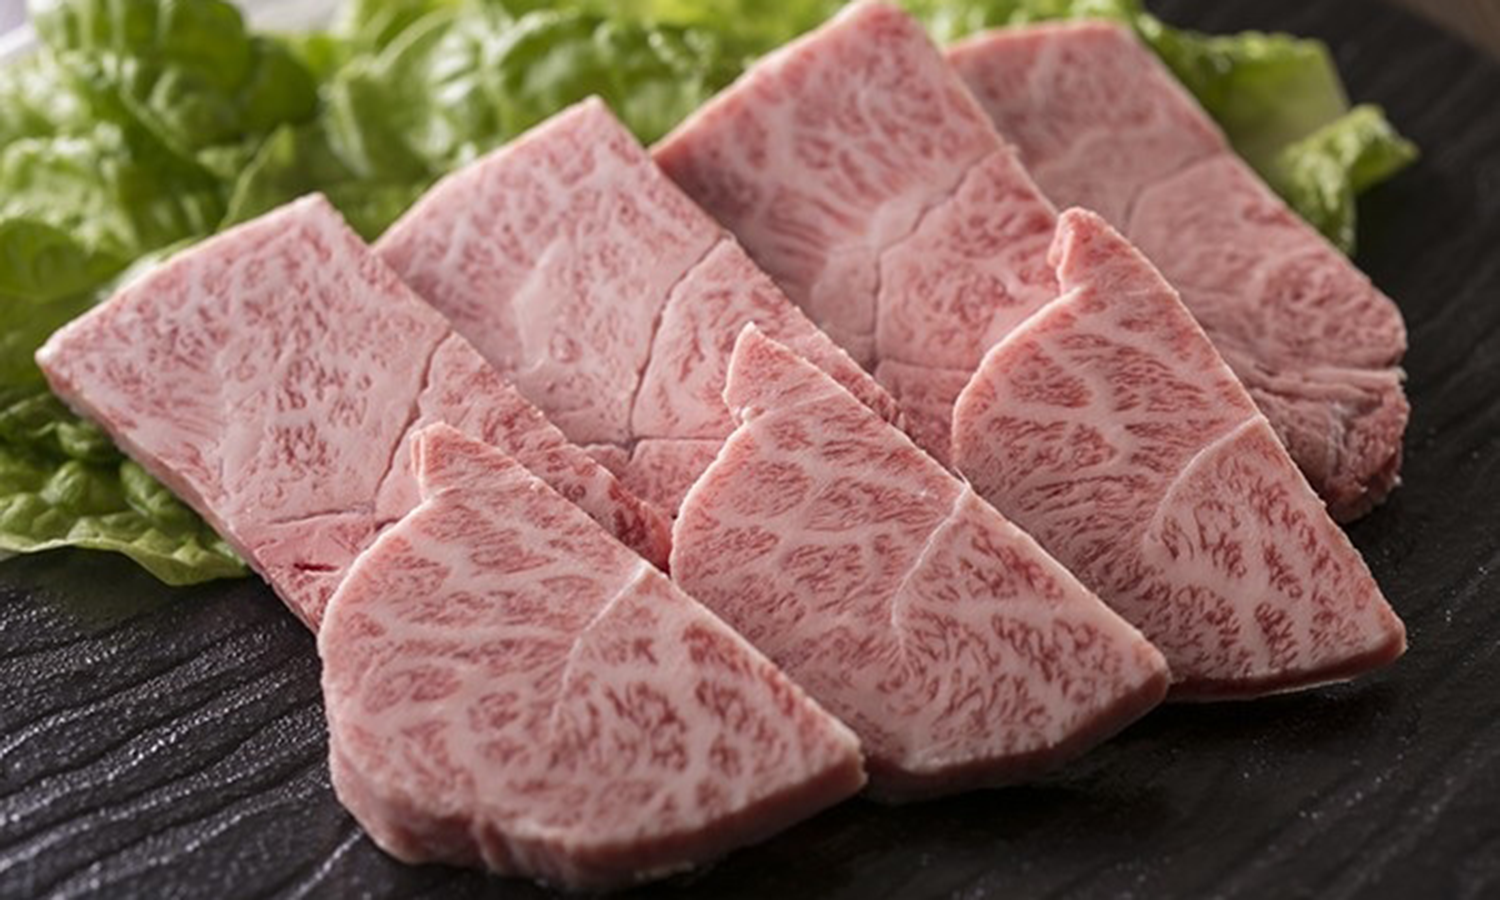 九州産の黒毛和牛をはじめ、本当に質のよい肉だけを厳選